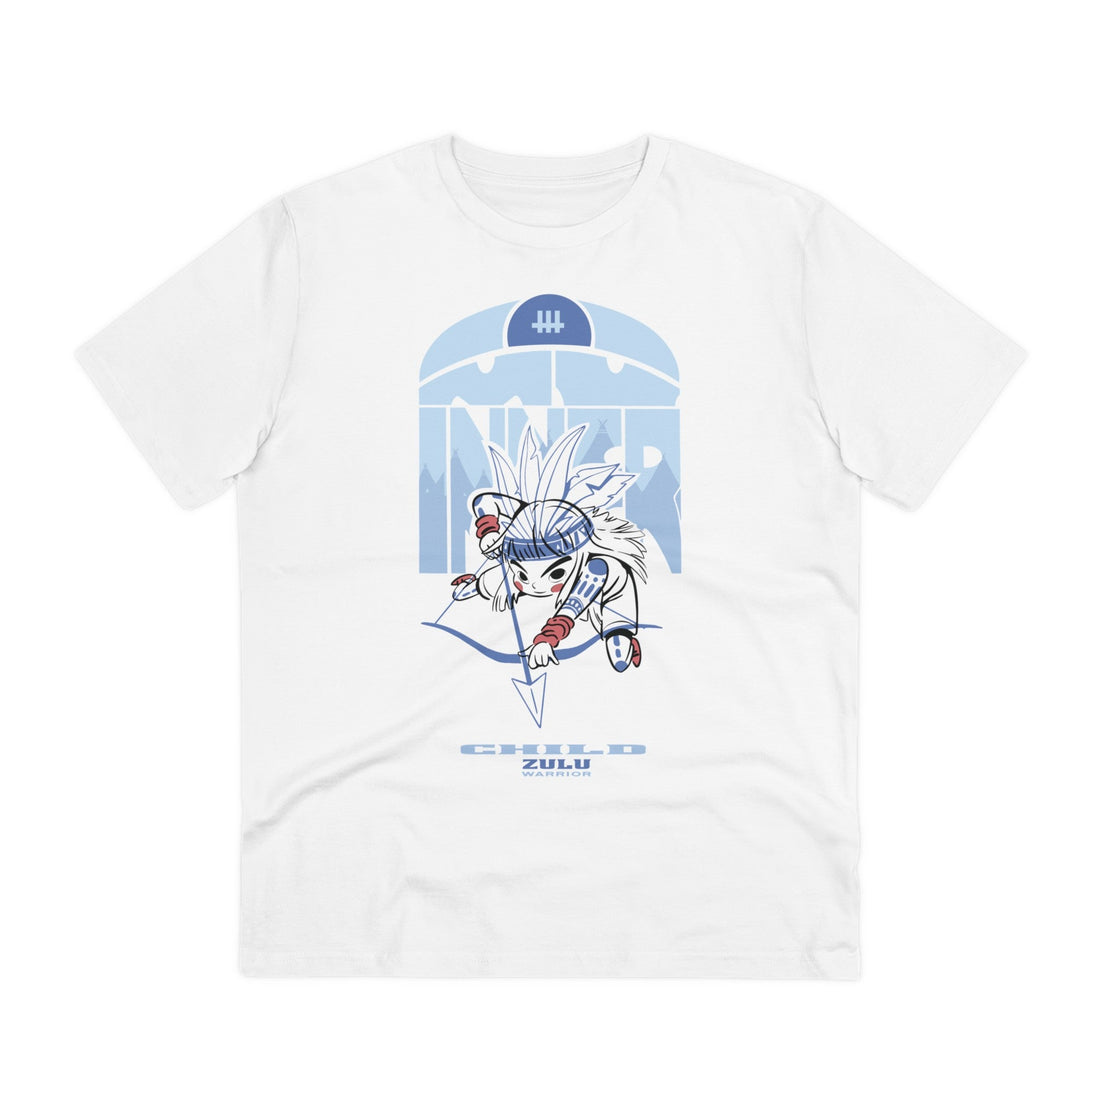 Printify T-Shirt White / 2XS Zulu Warrior Child - Warrior Kids - Front Design